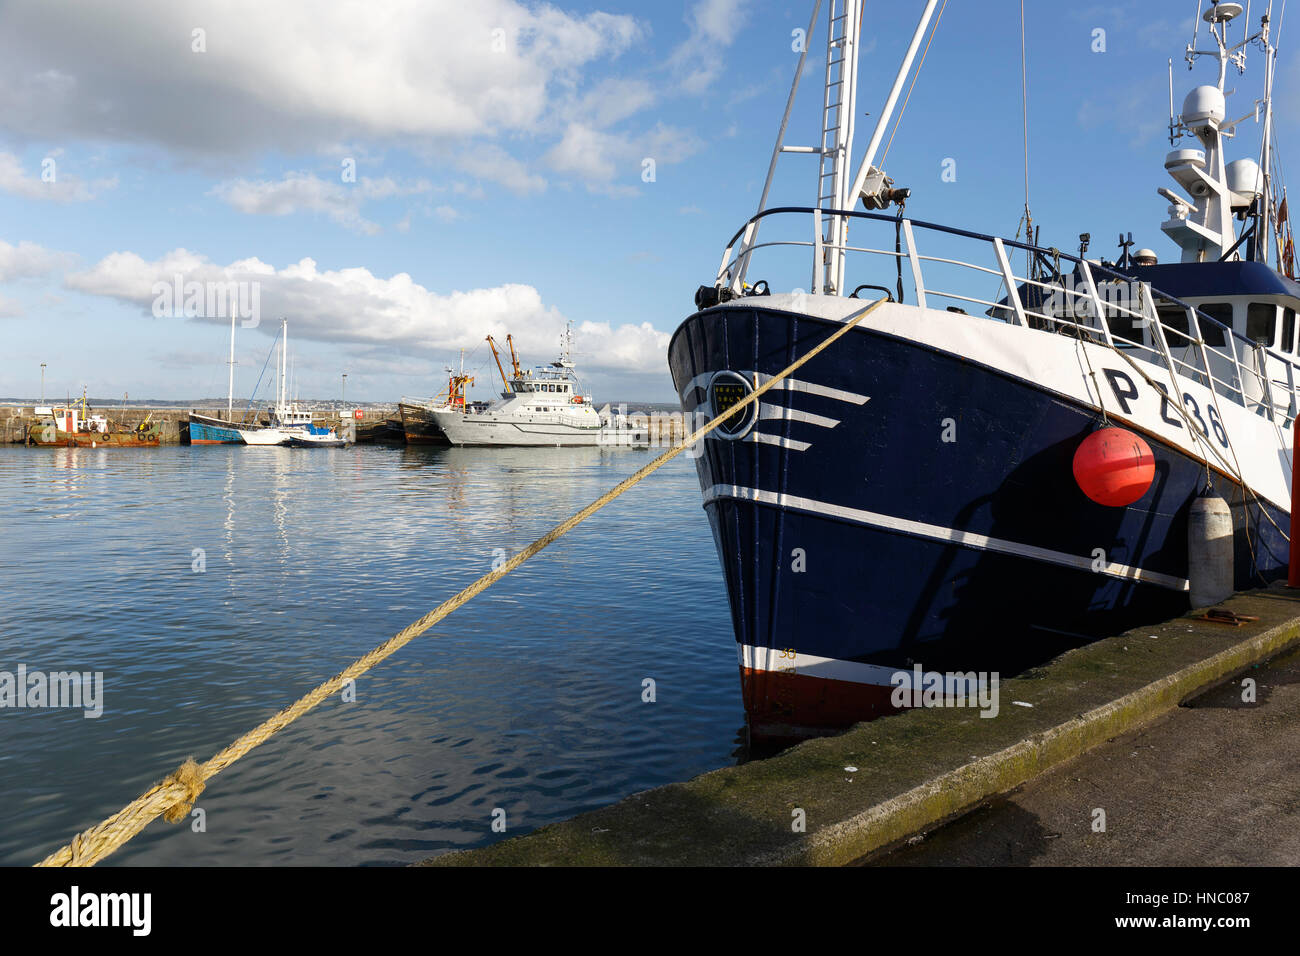 Ein Fischerei-Schutz-Schiff befindet sich gegenüber ein moderner Trawler bietet eine Reihe von Radaranlagen. Stockfoto